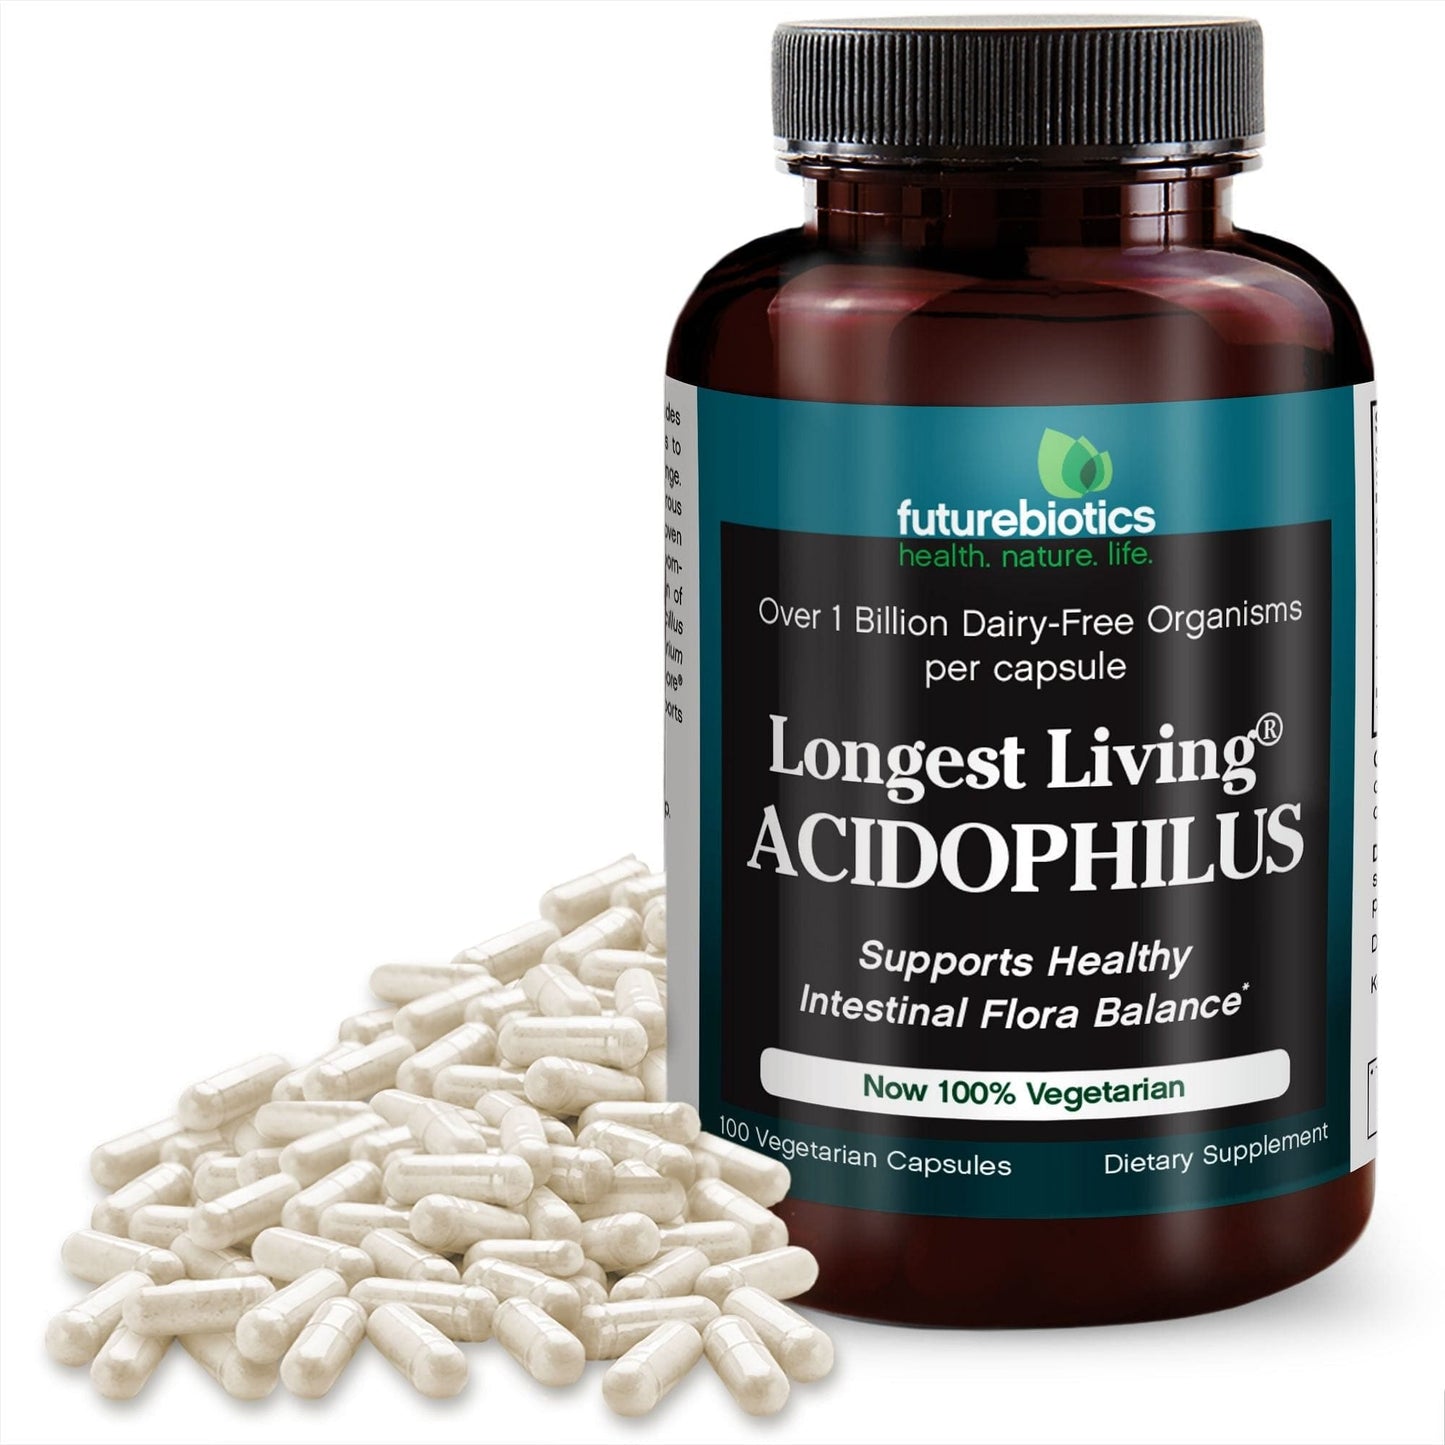 Futurebiotics Longest Living Acidophilus+ Probiotic Supplement, 100 Capsules (14.5mg of Probiotics per Capsule)